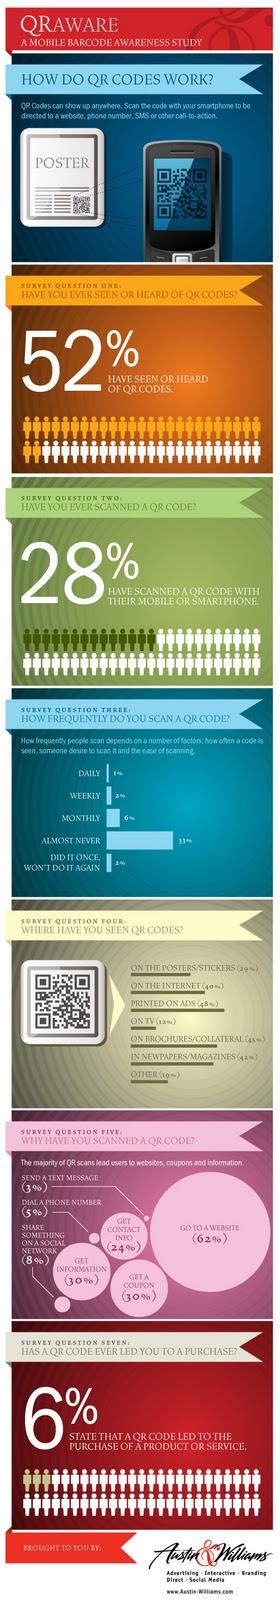 Les QR Code en infographie (statistiques US)